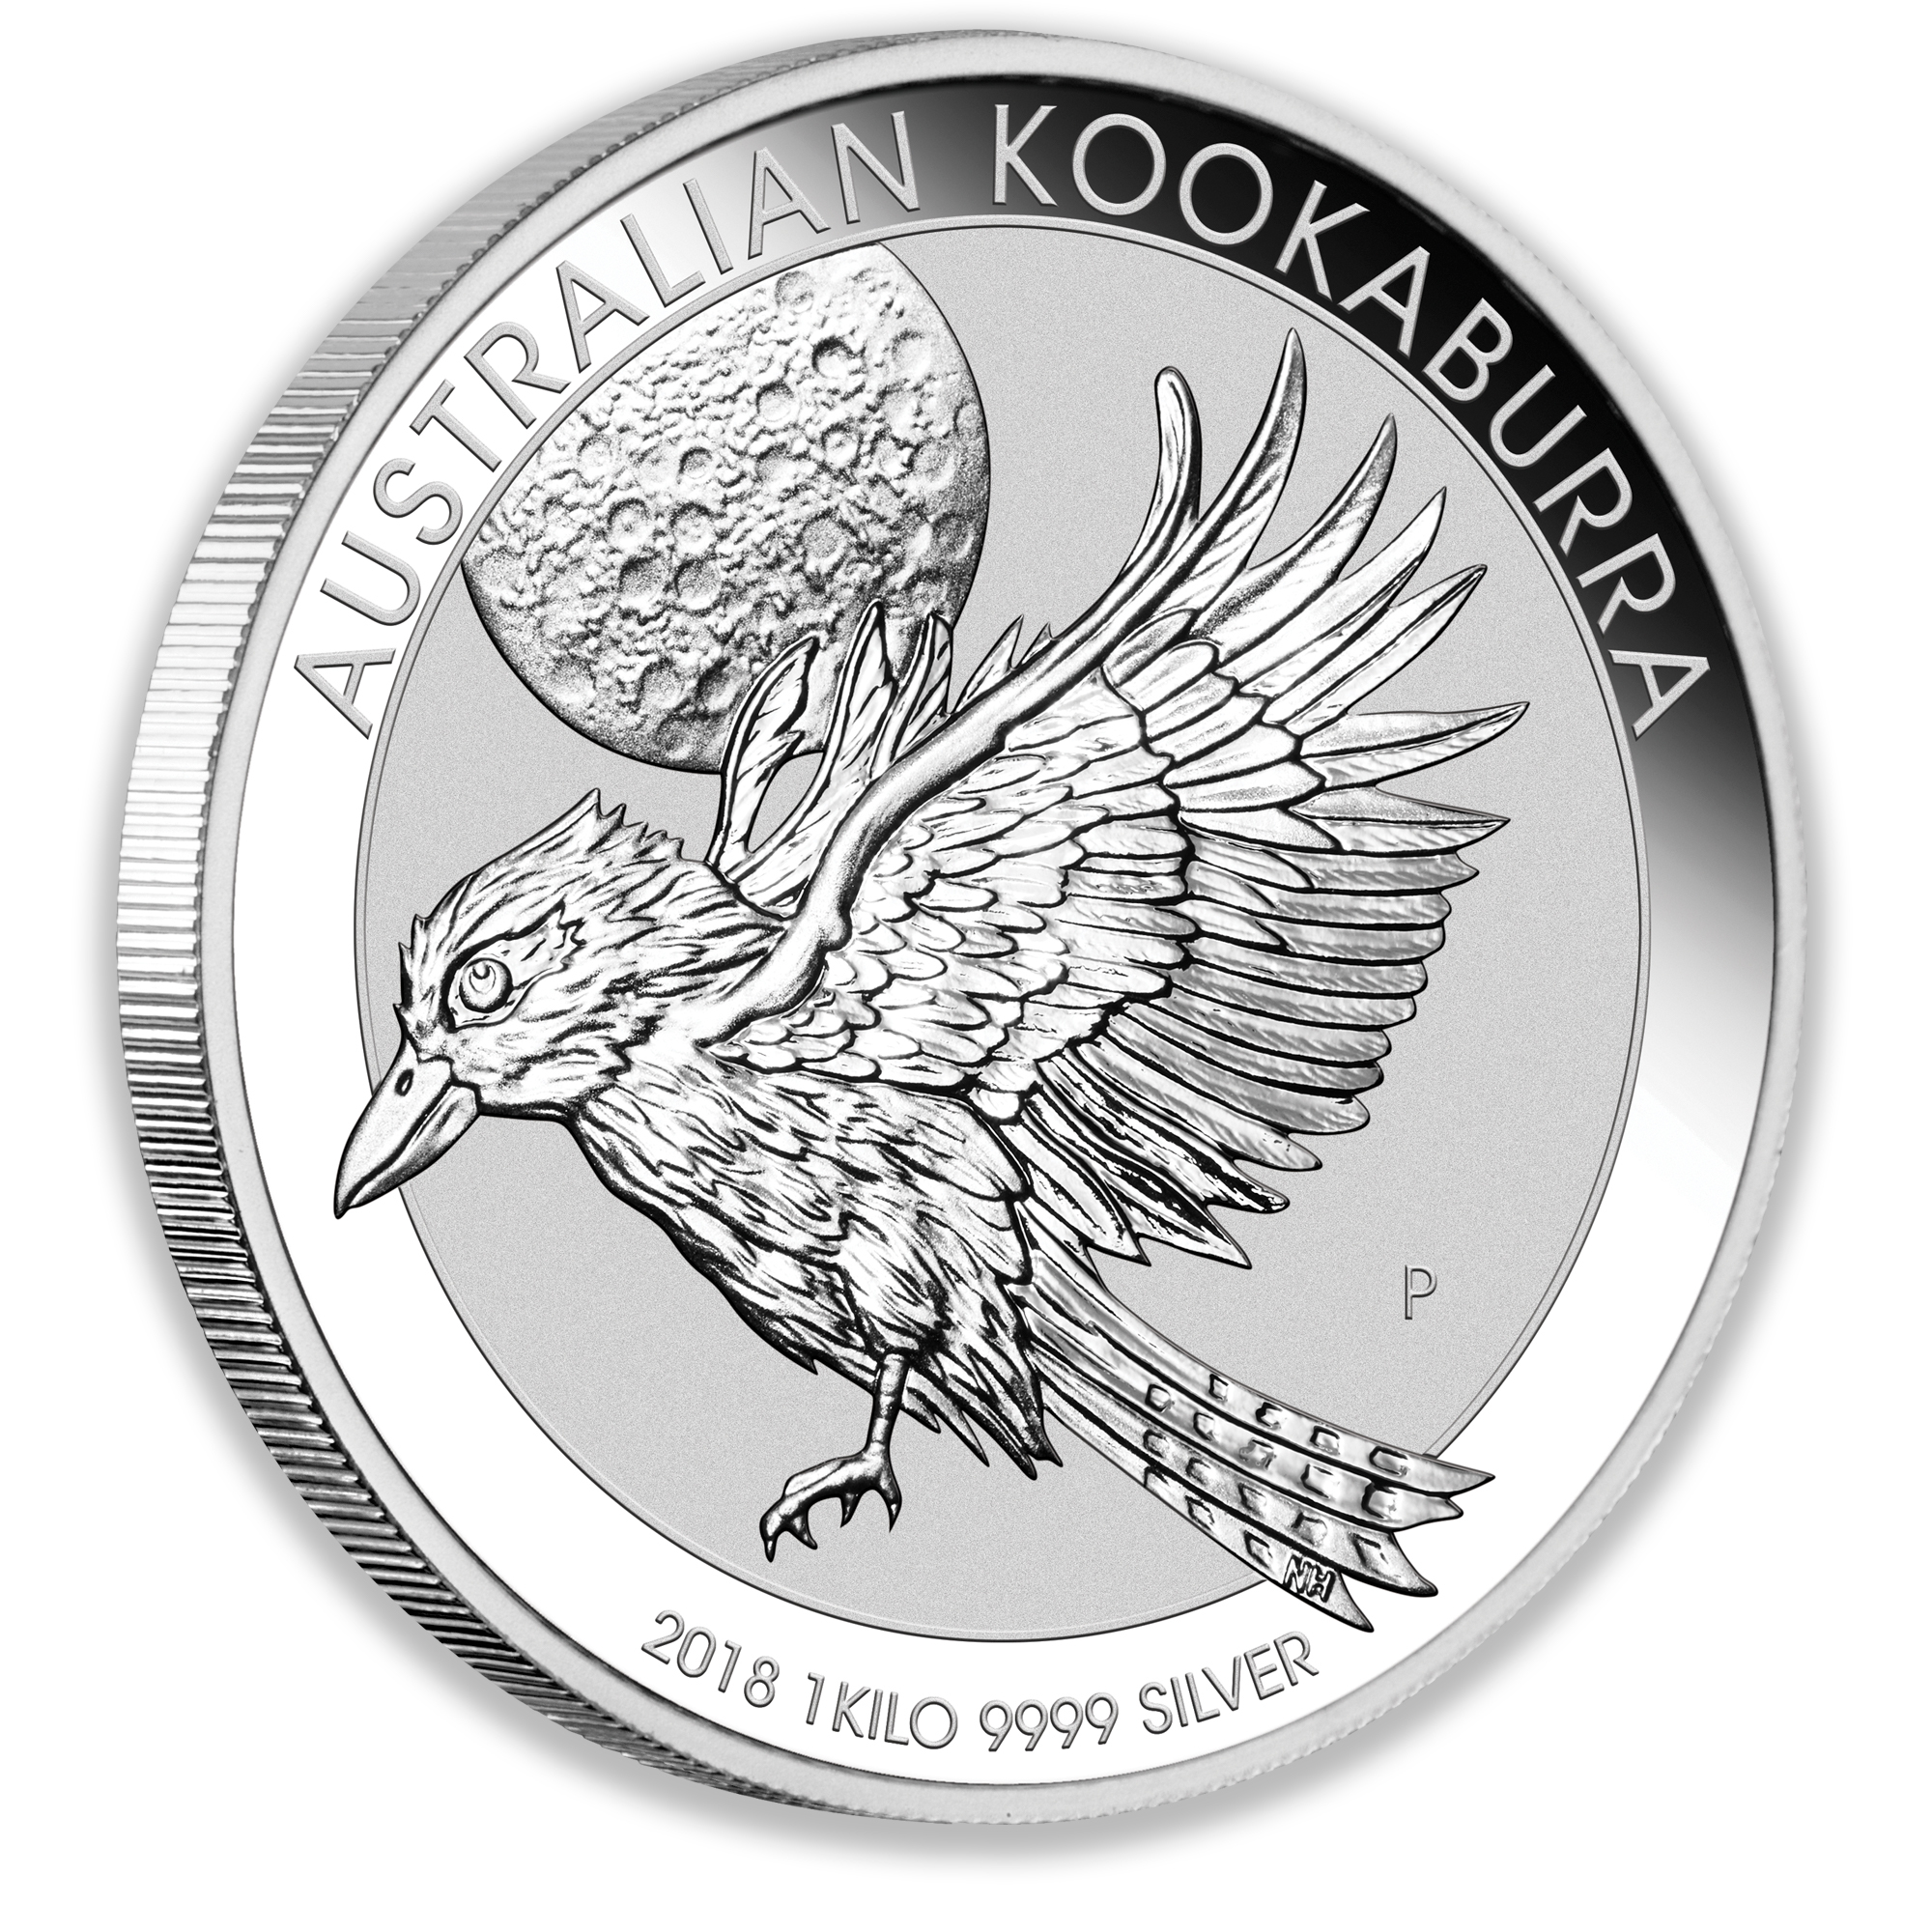 2018 1Kg Perth Mint Silver Kookaburra Coin